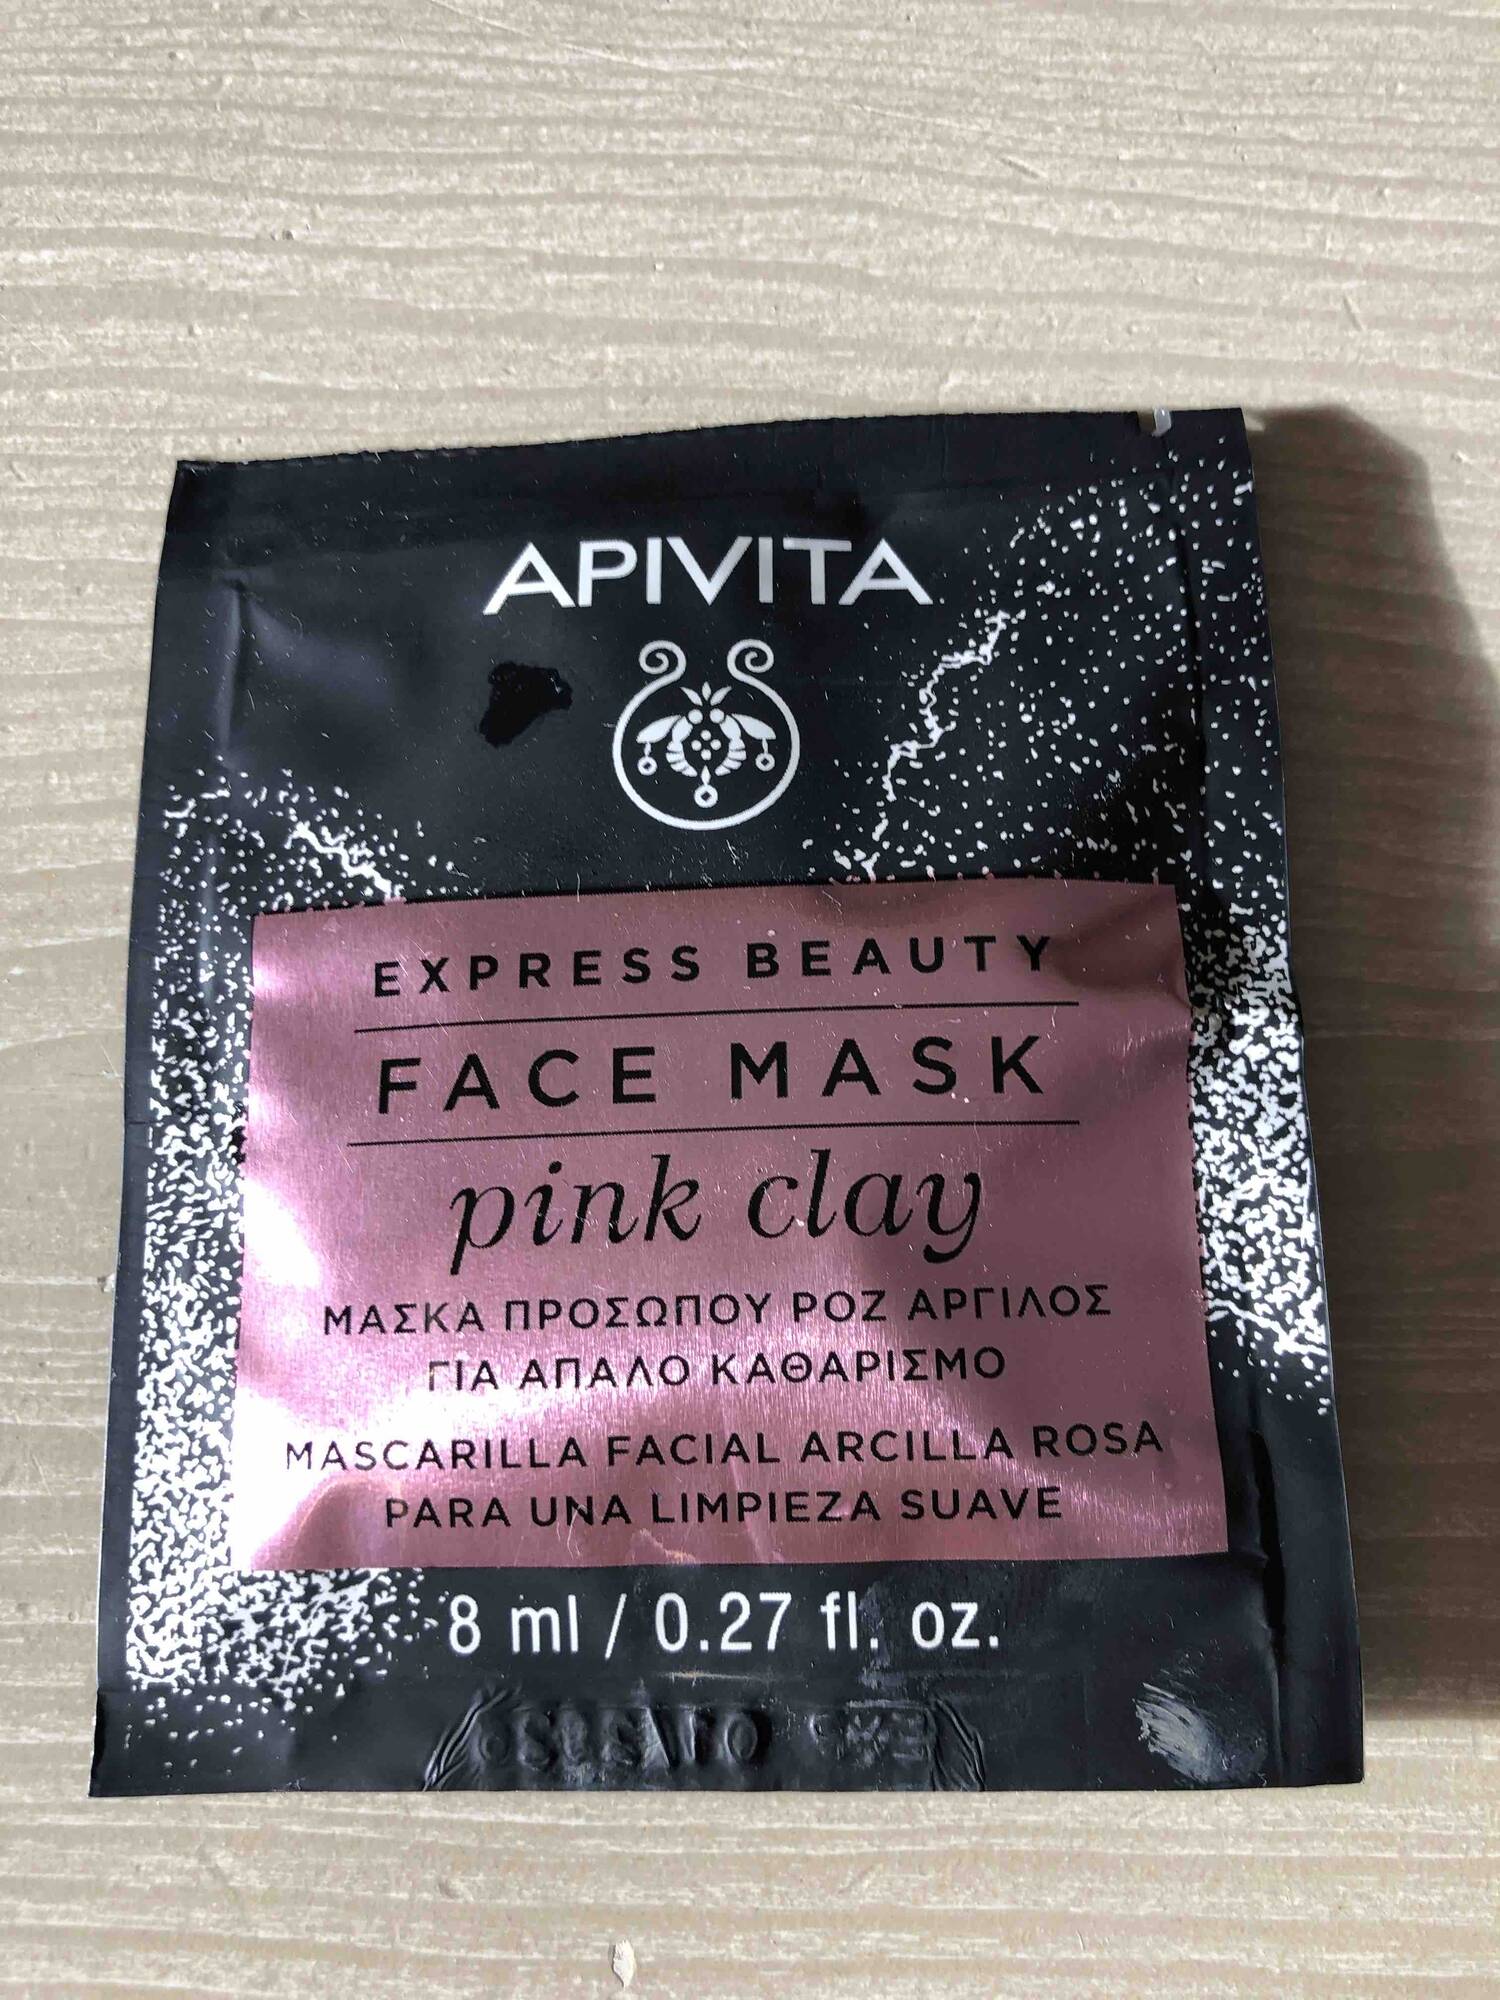 APIVITA - Pink clay - Face mask